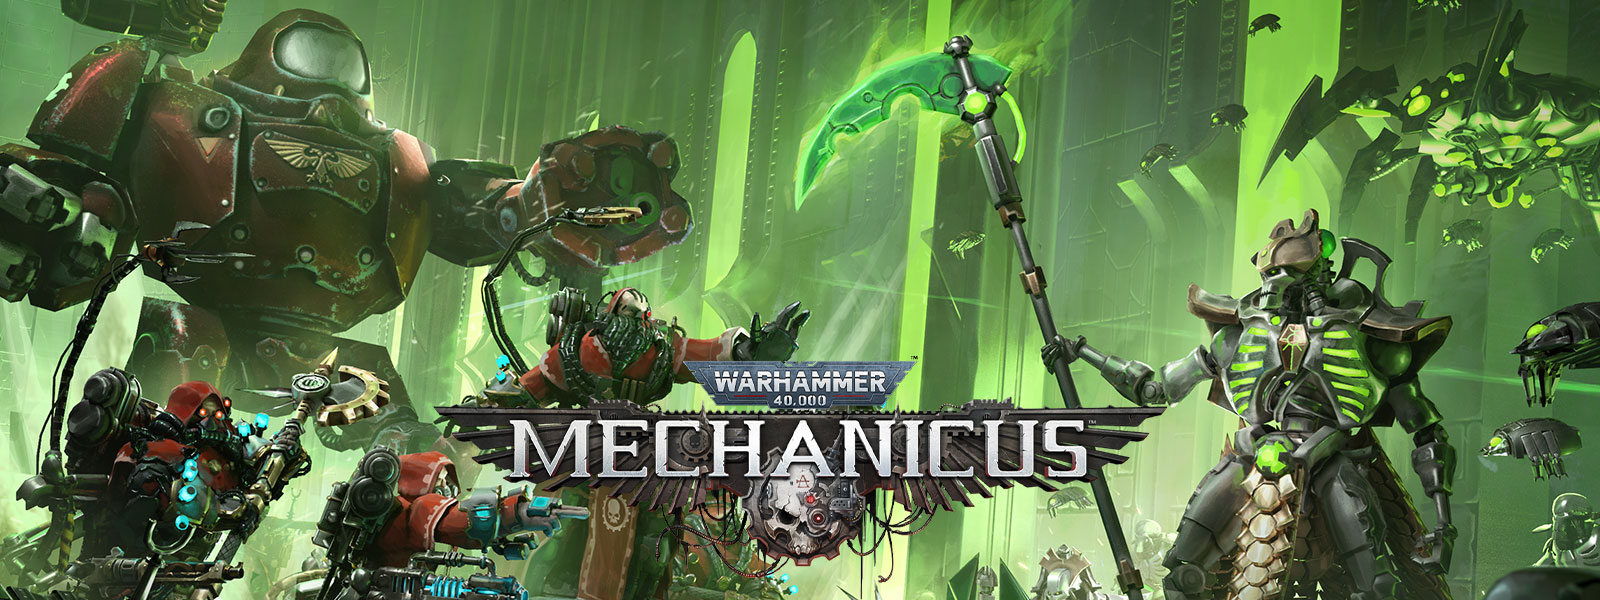 Warhammer 40,000: Mechanicus, deux armées high-tech se préparent pour la bataille.